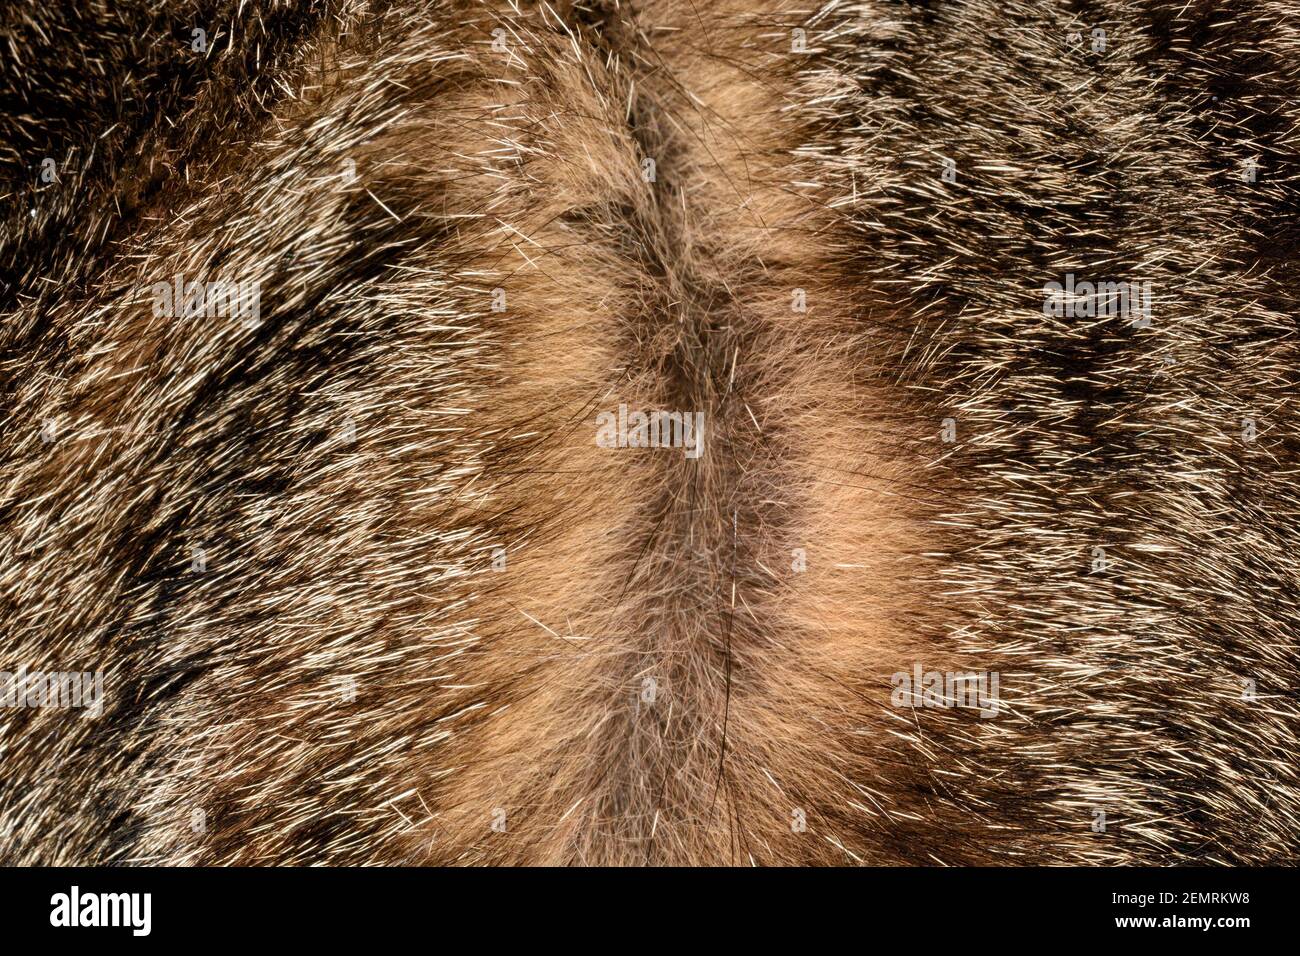 Capelli castani di gatto tabby divisi a radici per mostrare la coloriazione dei singoli capelli; con spiccata pigmentazione causata dal gene agouti Foto Stock